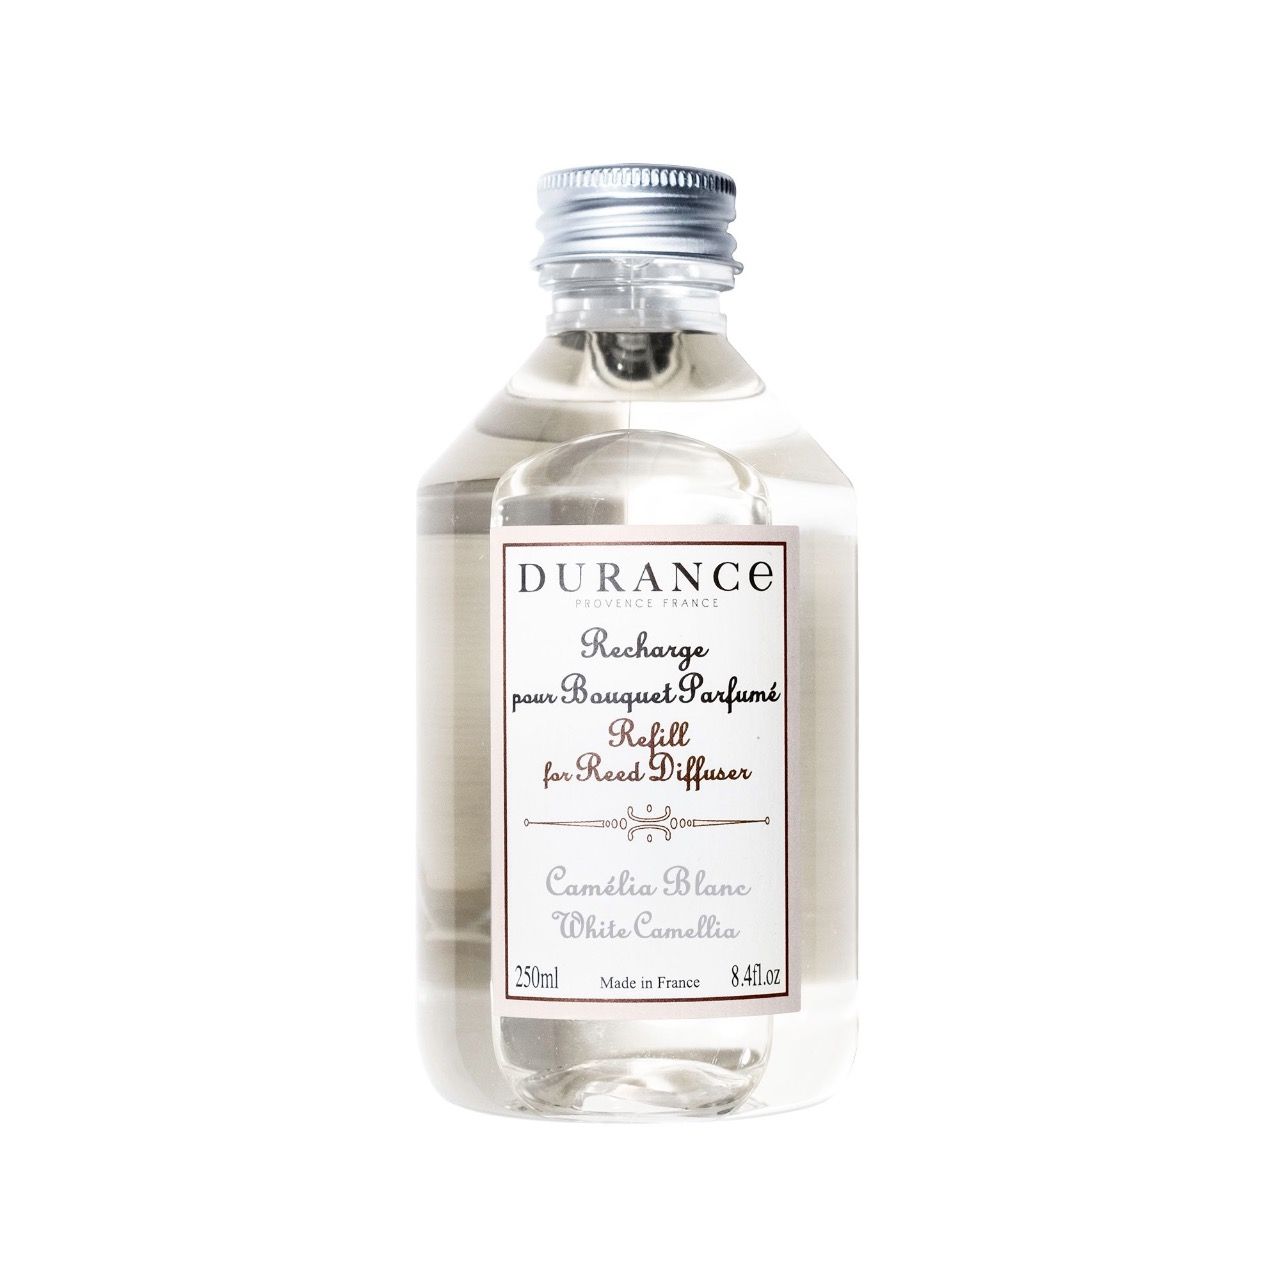 Recharge diffuseur de parfum "Camélia Blanc" - DURANCE 